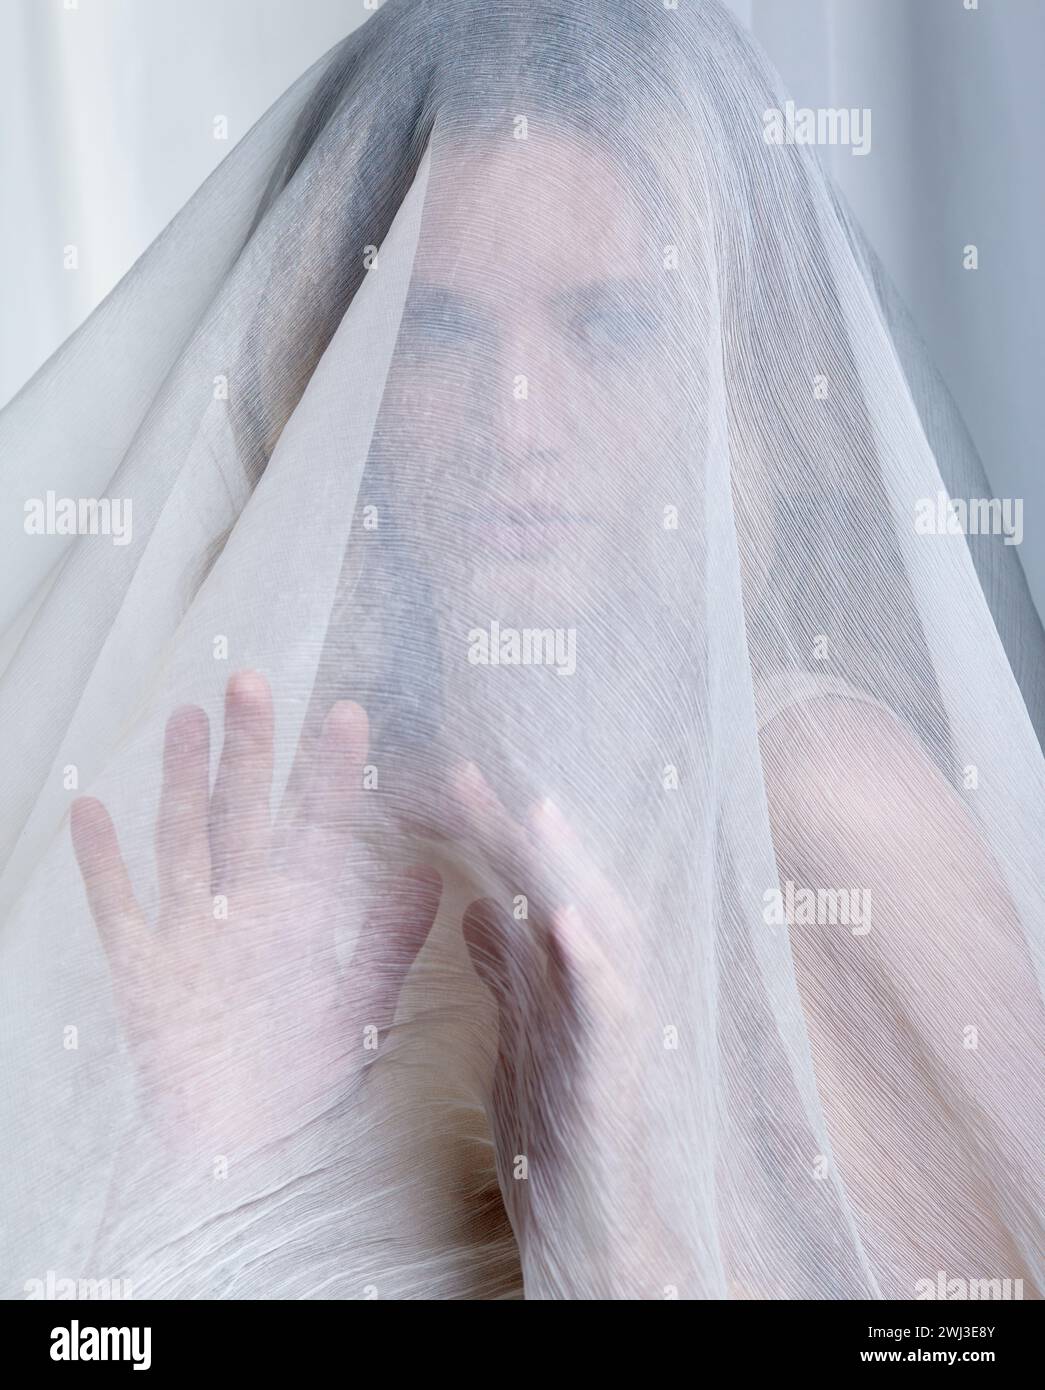 Ritratto di una giovane donna ricoperta di tessuto in rete bianca. Una donna si nasconde dietro un velo. Foto Stock